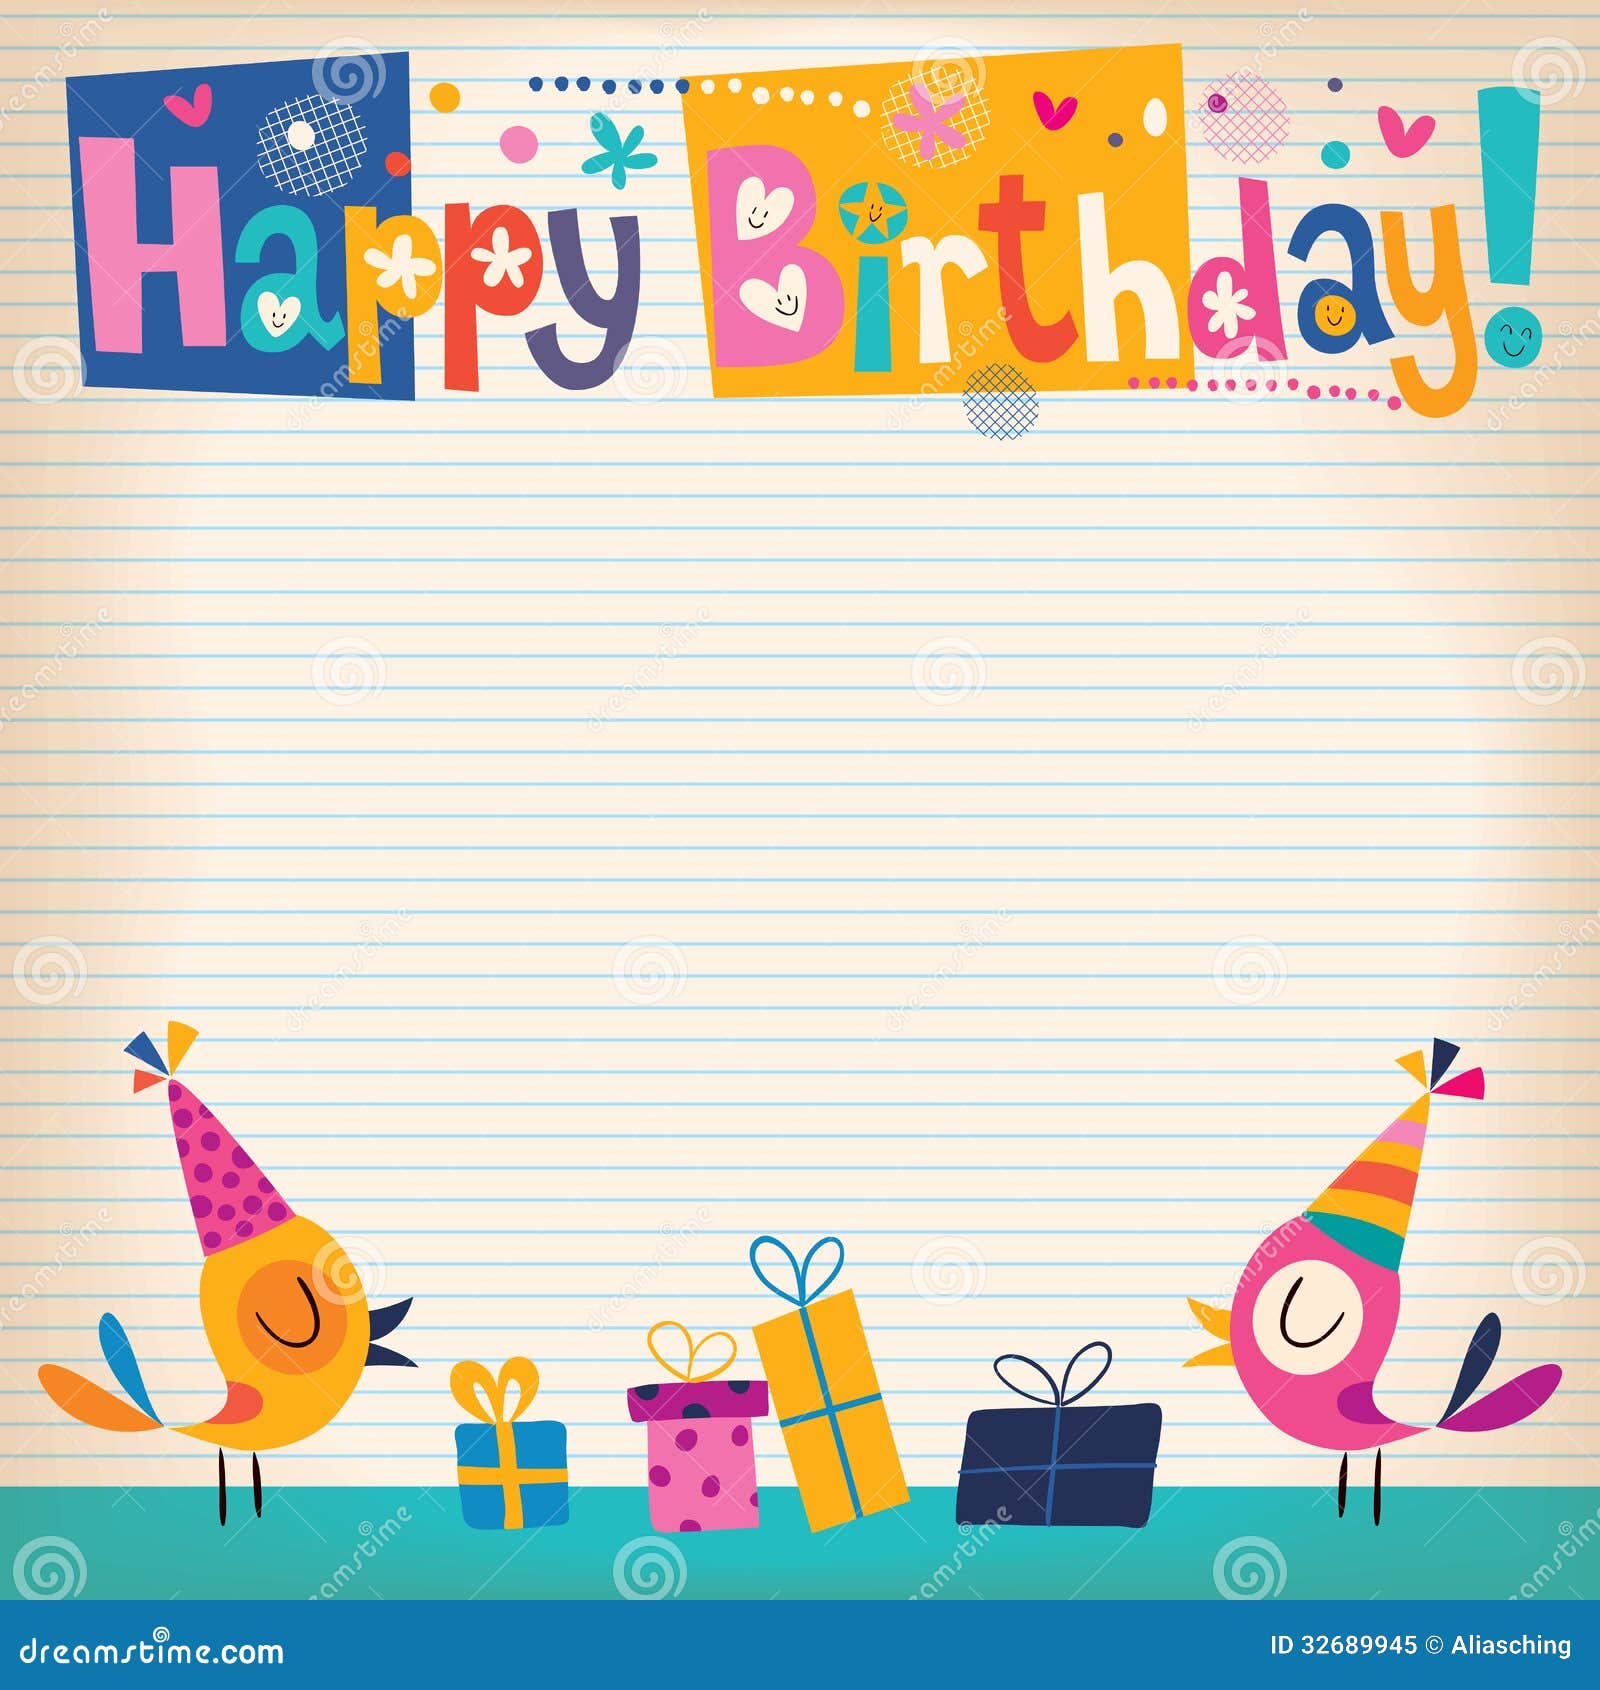 Birthday Stationery Happy Birthday Printer Paper 6522 8.5 x 11-60 Sheets 